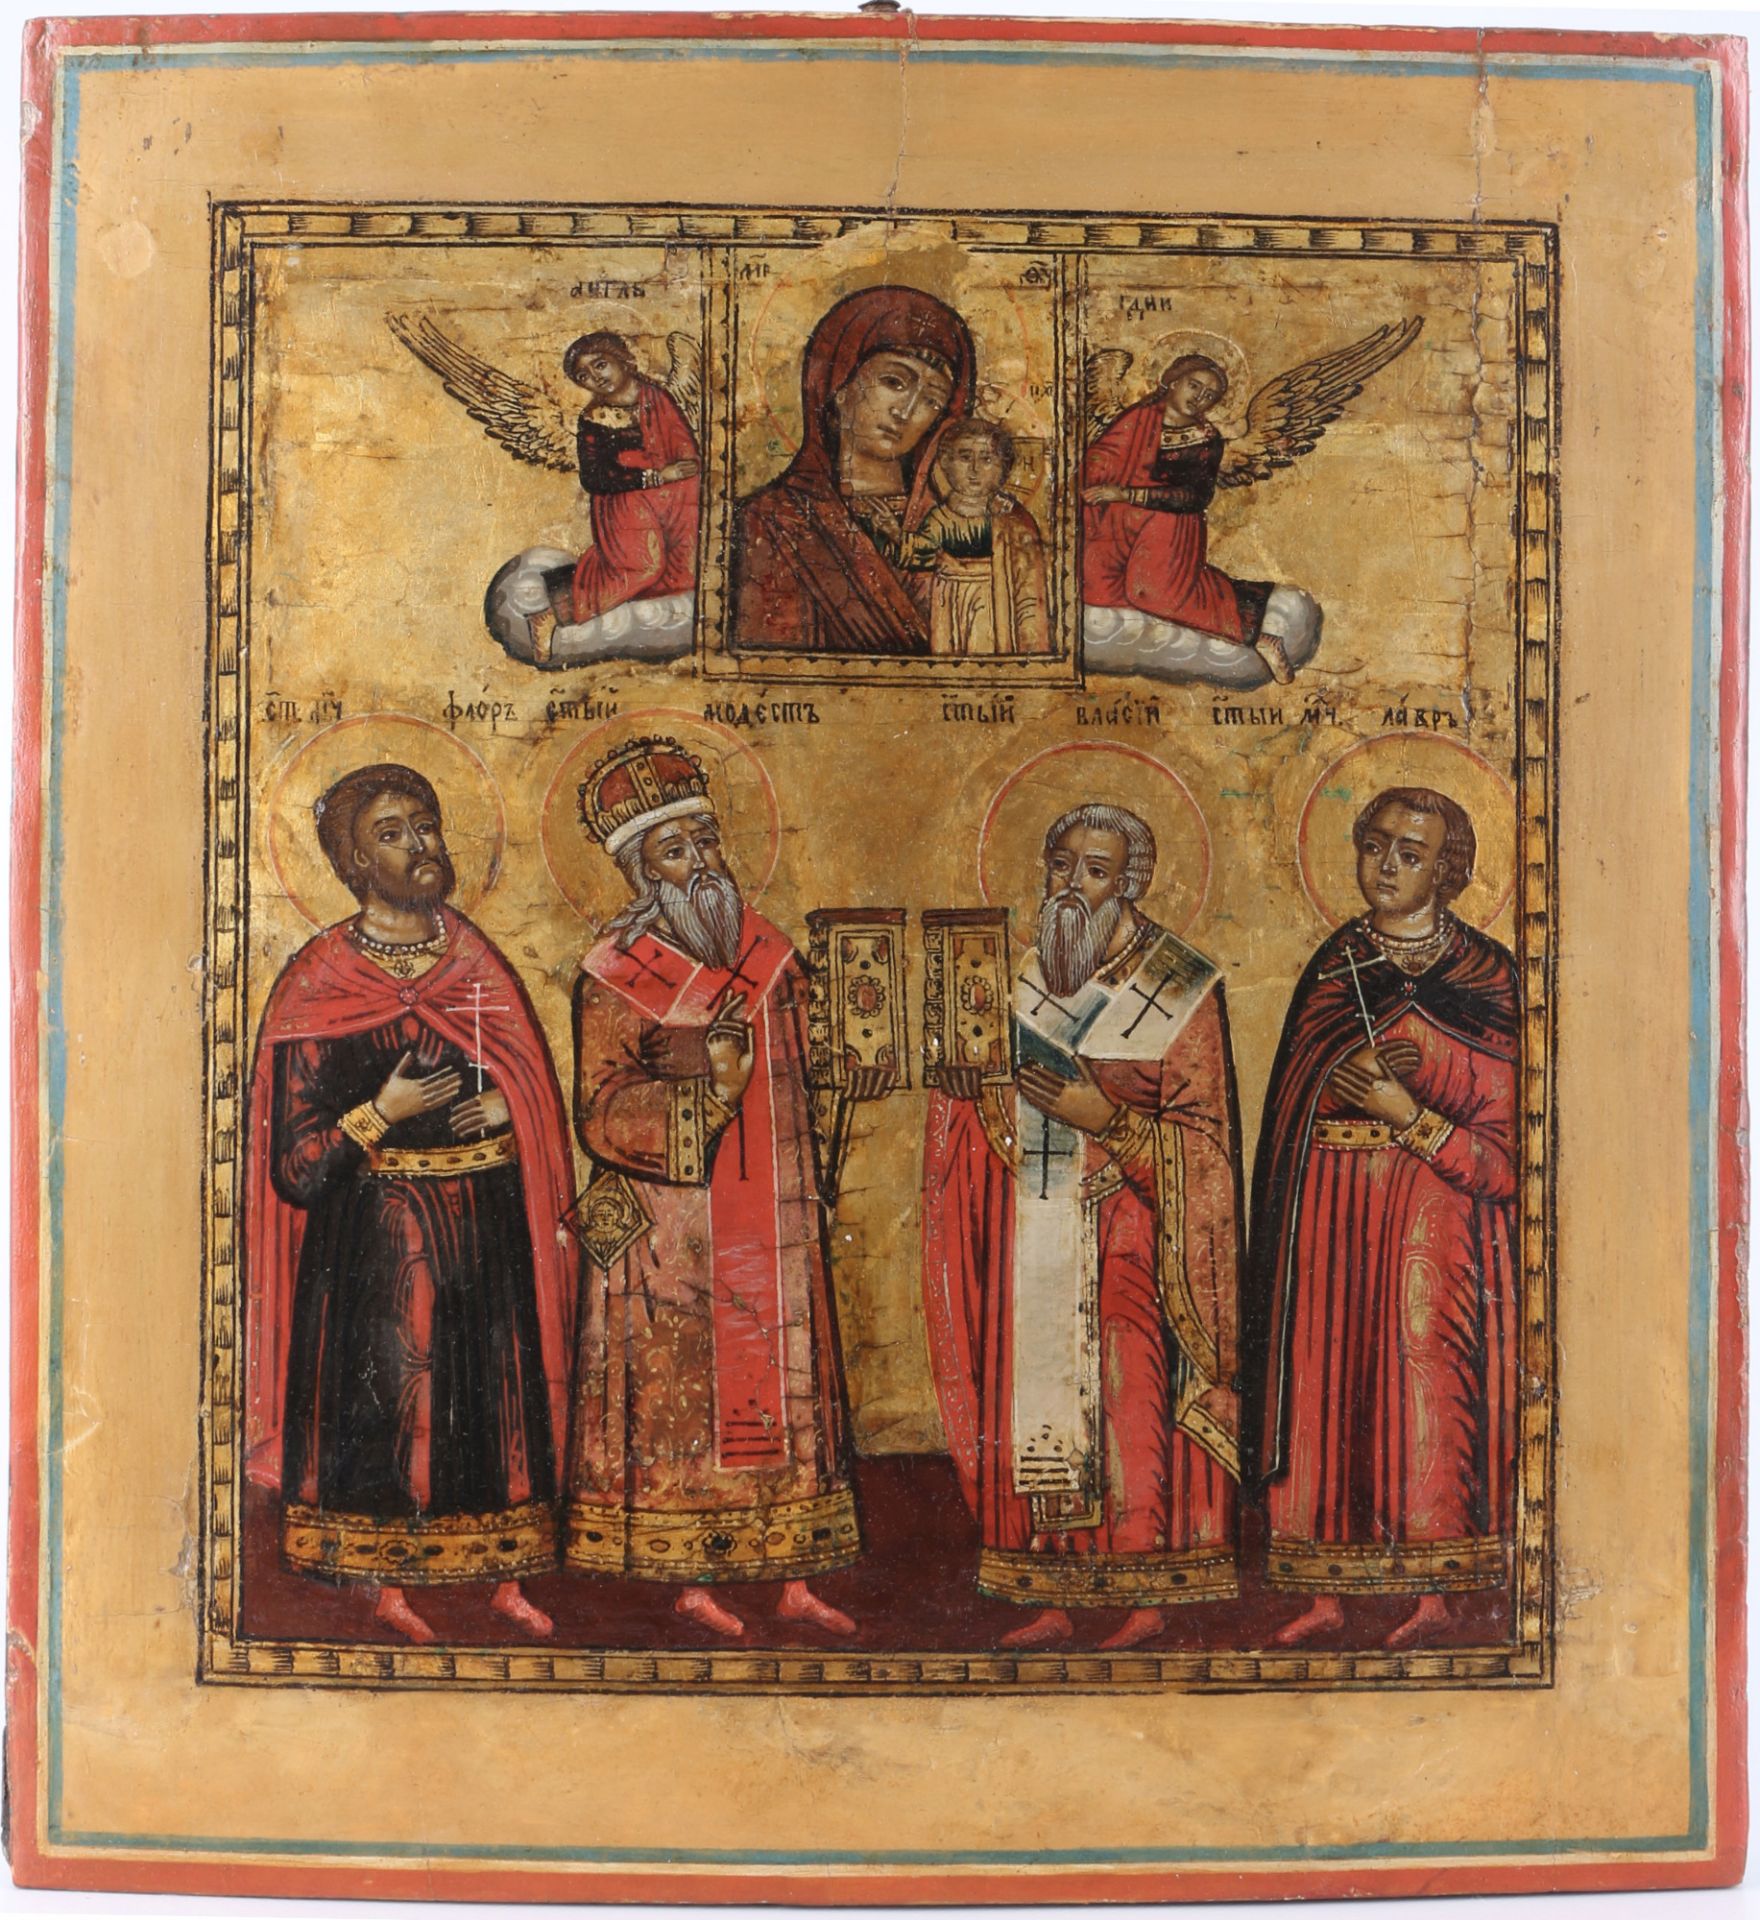 Russland 19. Jahrhundert Ikone mit vier Heiligen, u.a. Hl. Nikolaus und Hl. Theophil,